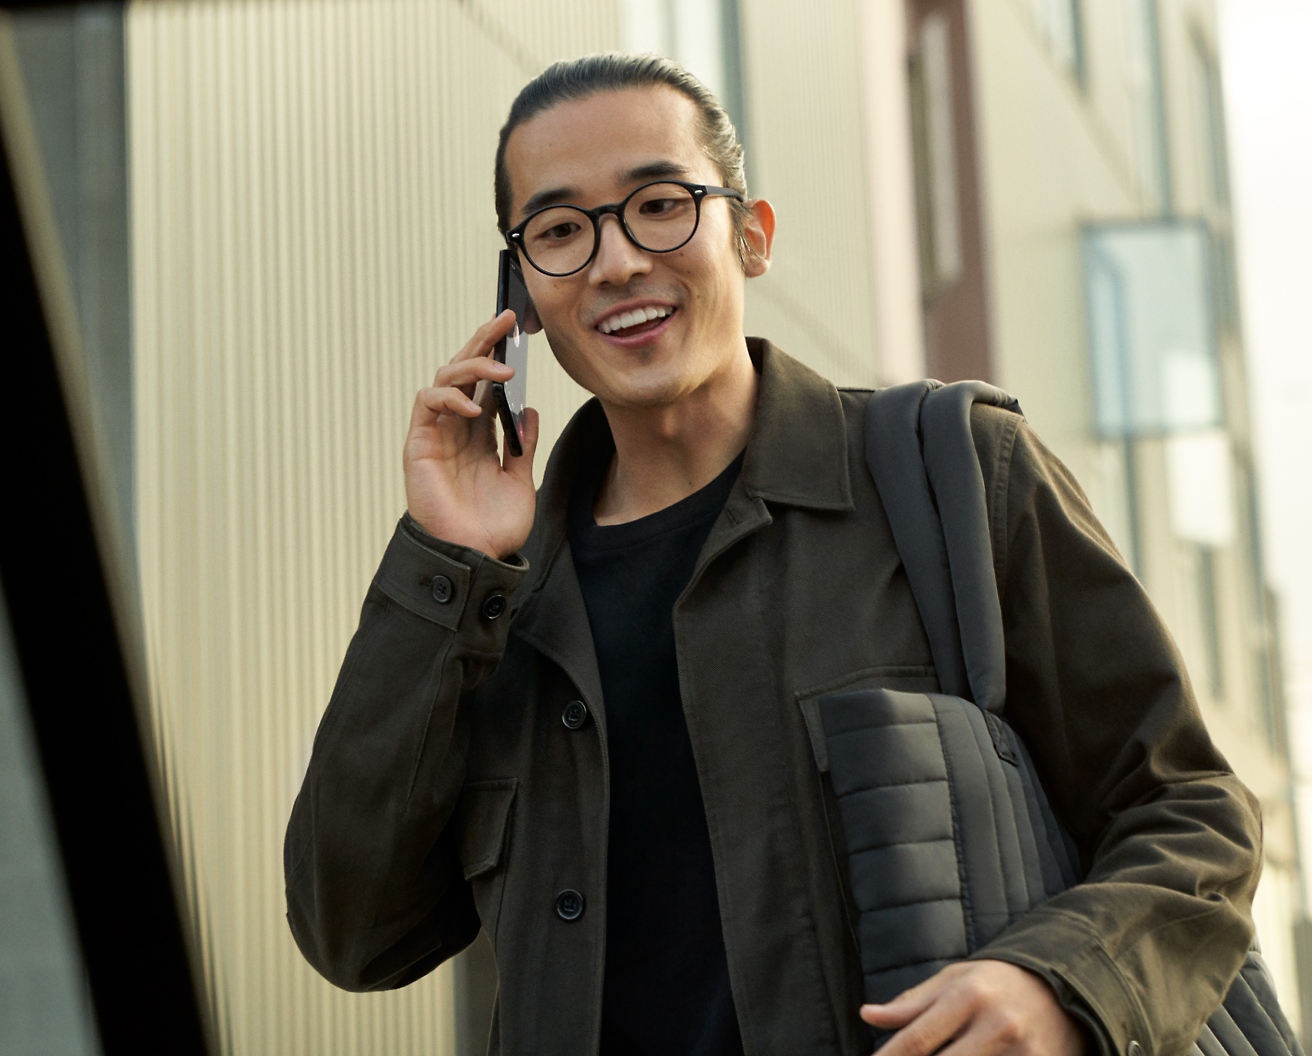 Une personne dans des lunettes tenant un téléphone portable et souriant